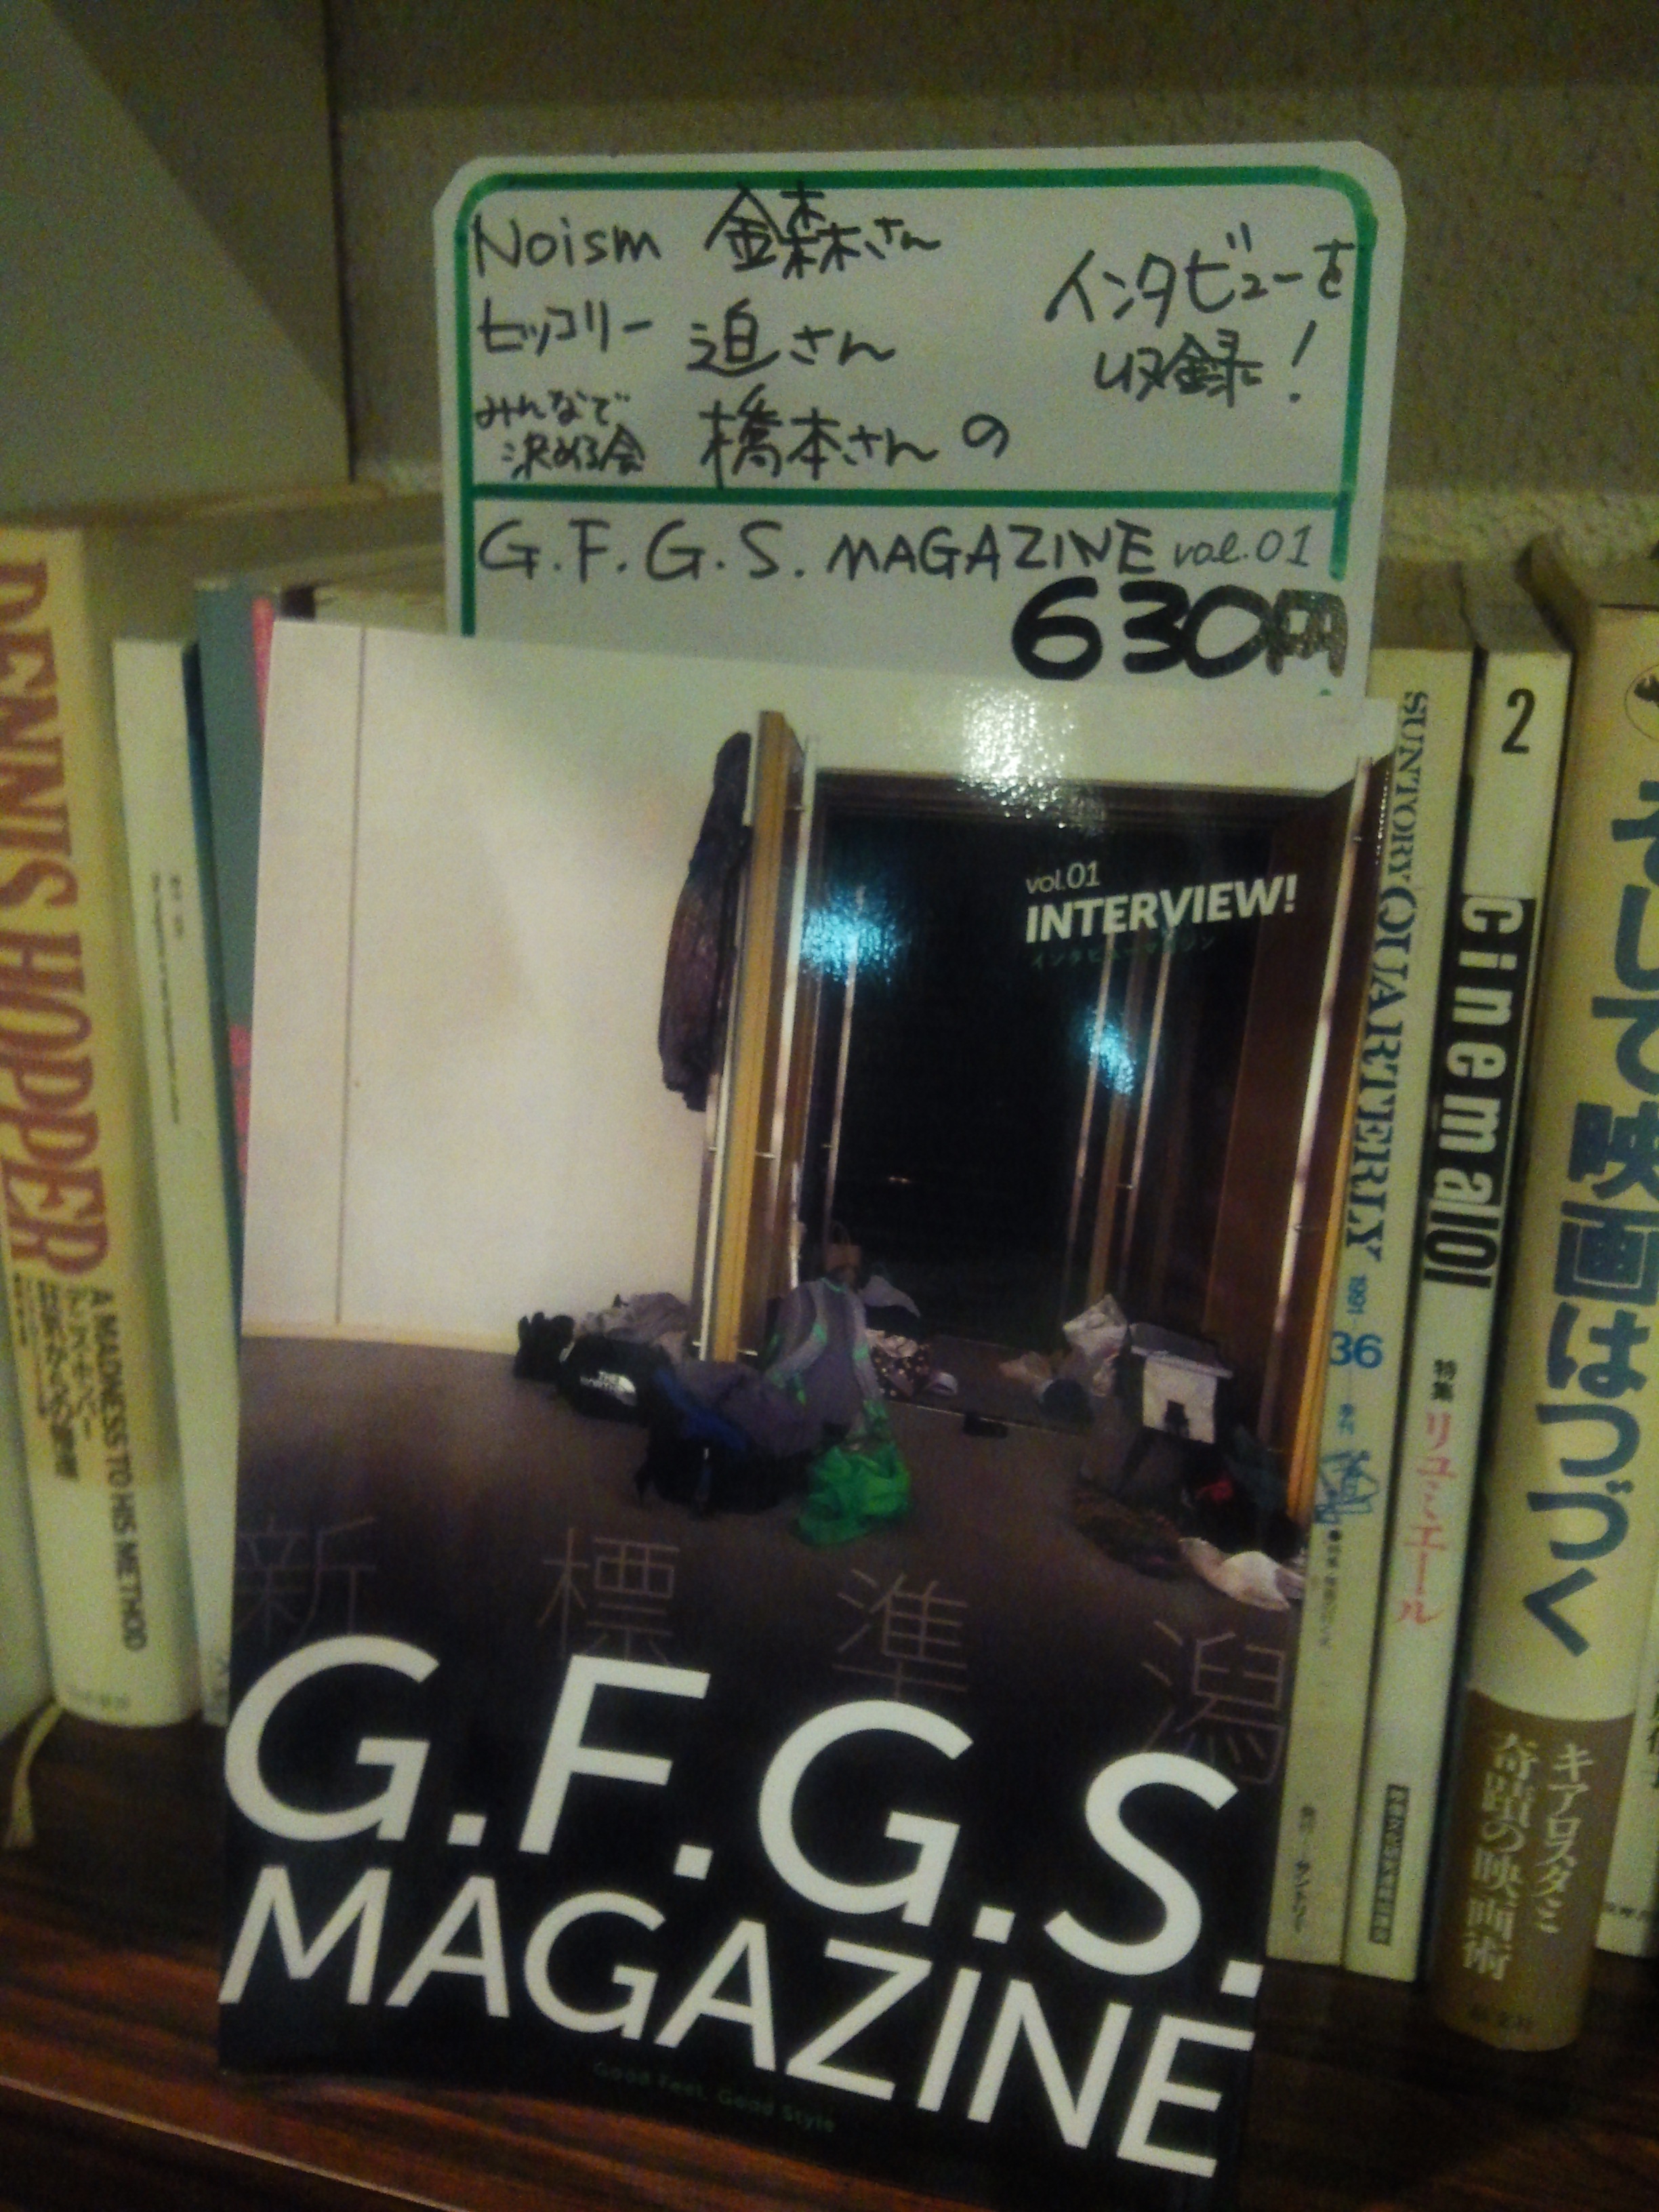 G.F.G.S. MAGAZINE販売してます。